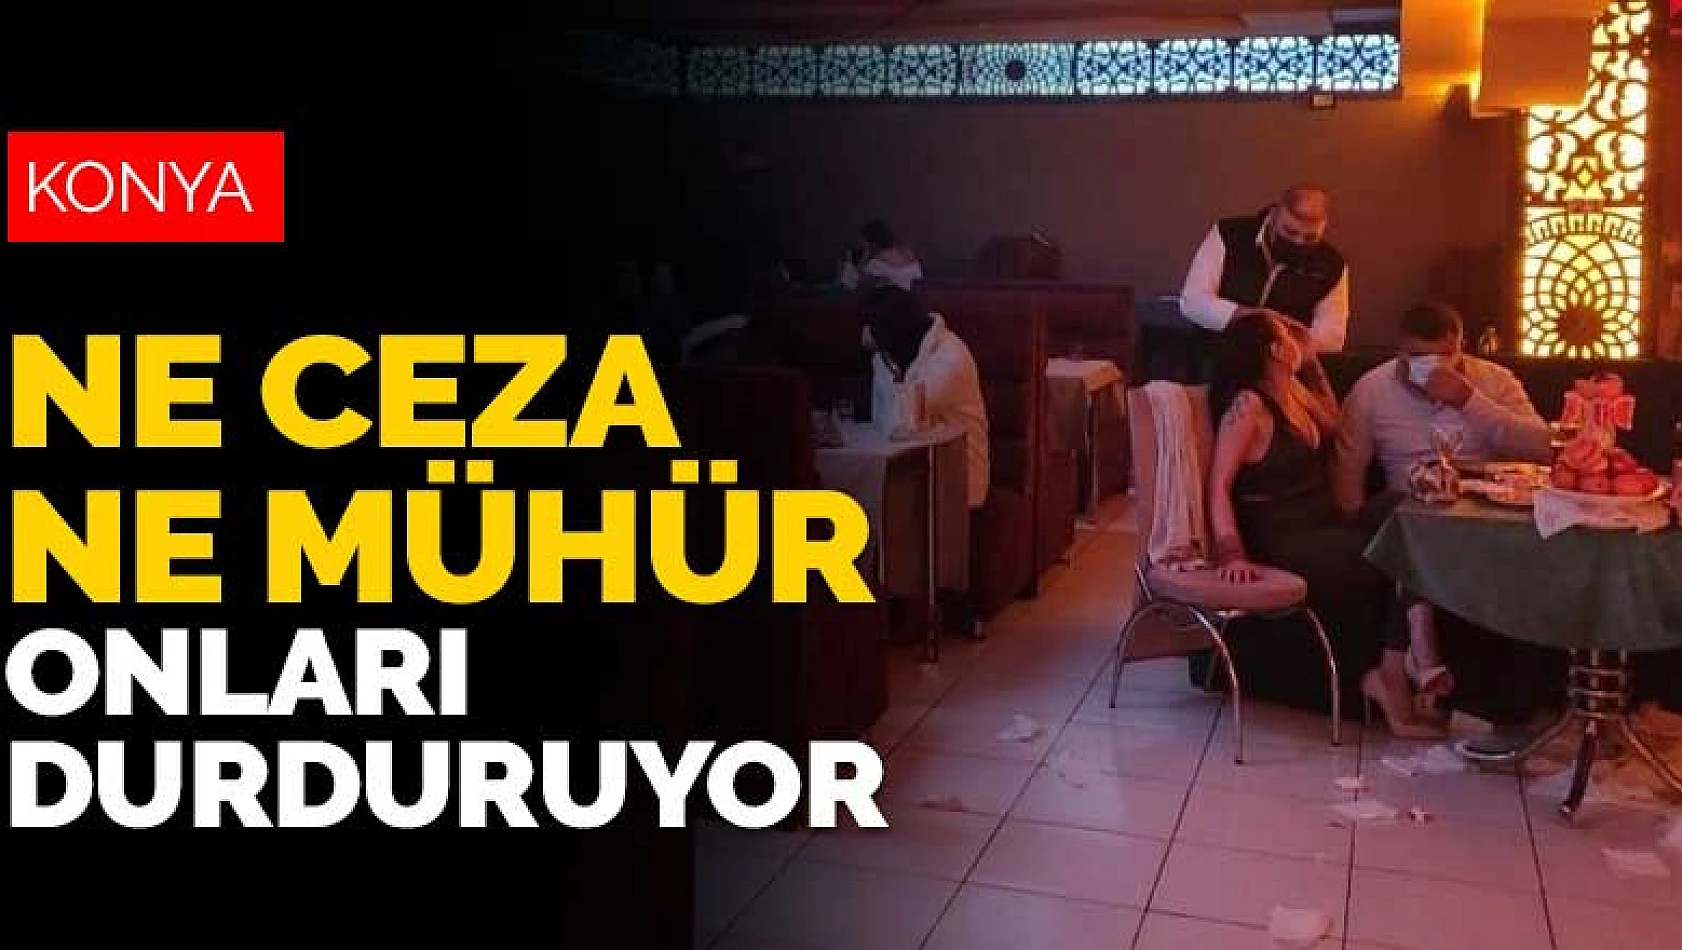 Ne ceza ne mühür durdurmuyor! Konya'da yasak dinlemeyen gazinolara baskın